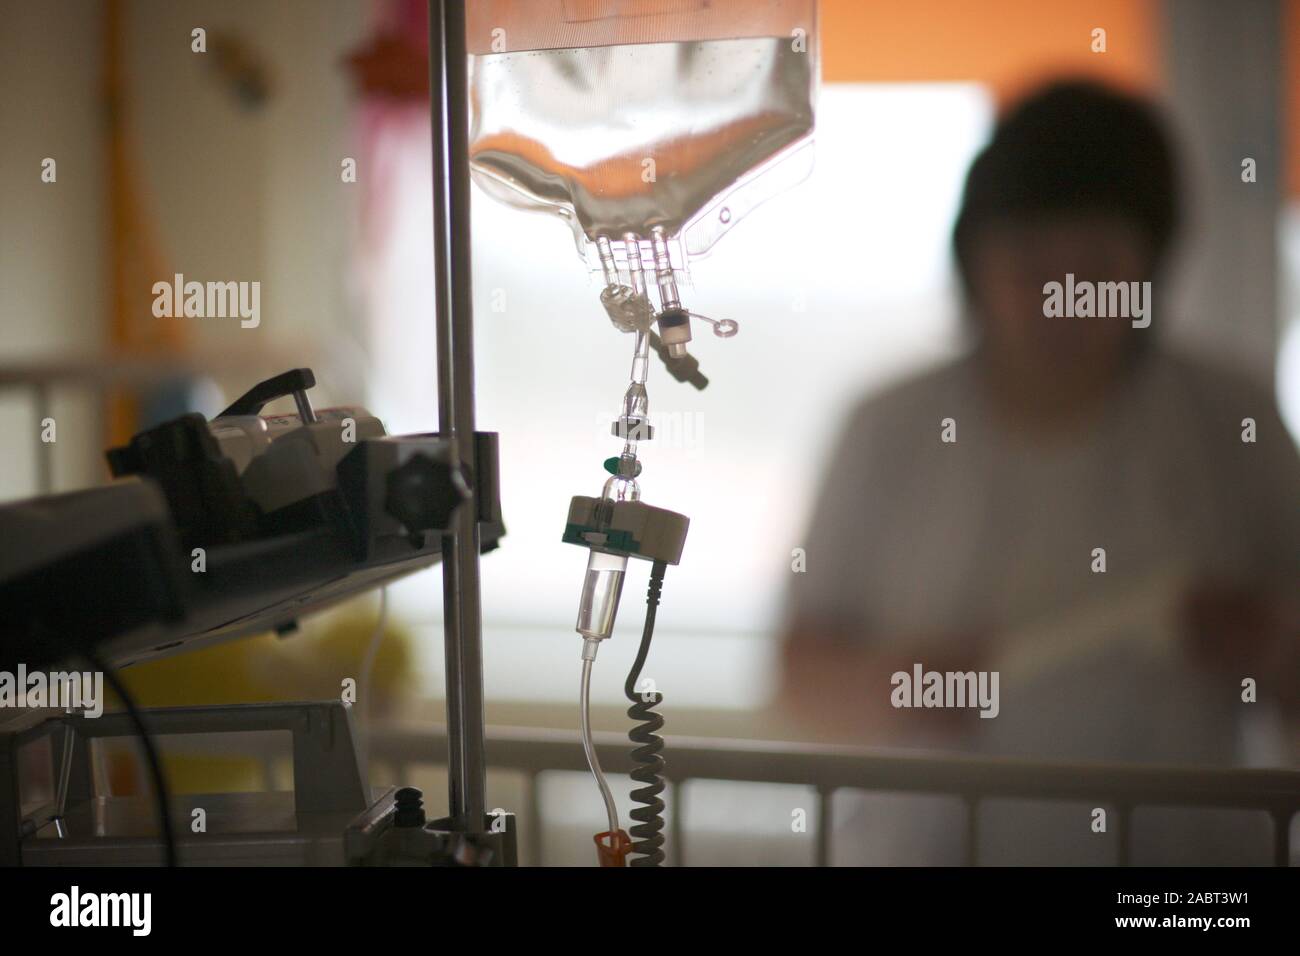 L'équipement médical et dispositif pour l'administration de drogues par voie intraveineuse à un patient dans une clinique moderne Banque D'Images